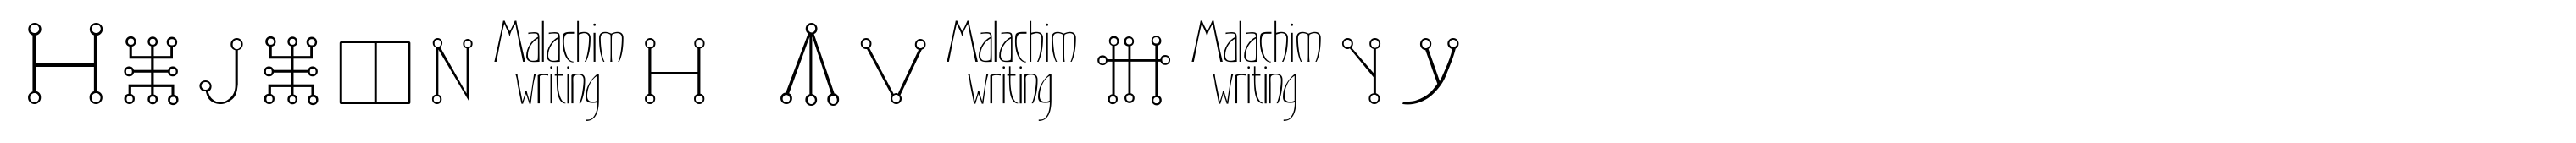 Malachim Writing